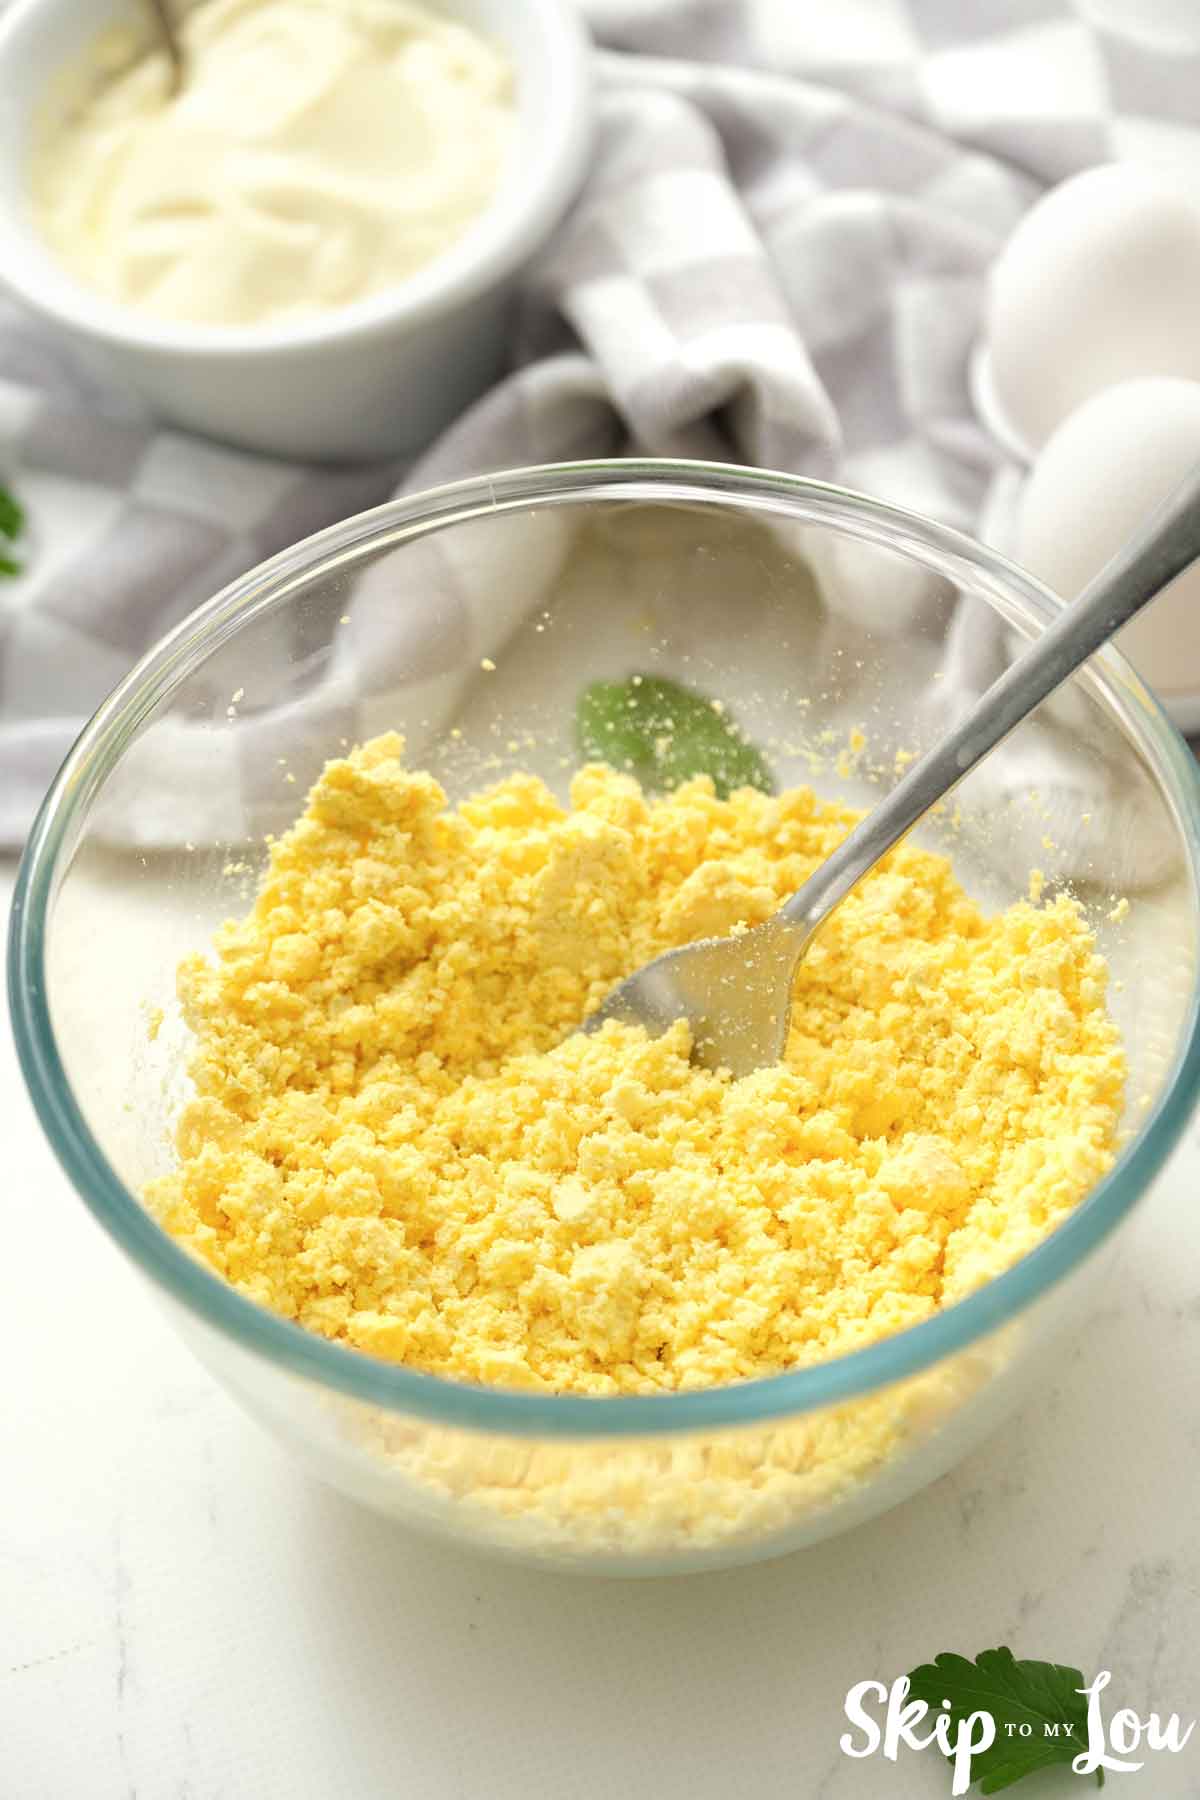 mash egg yolks in bowl